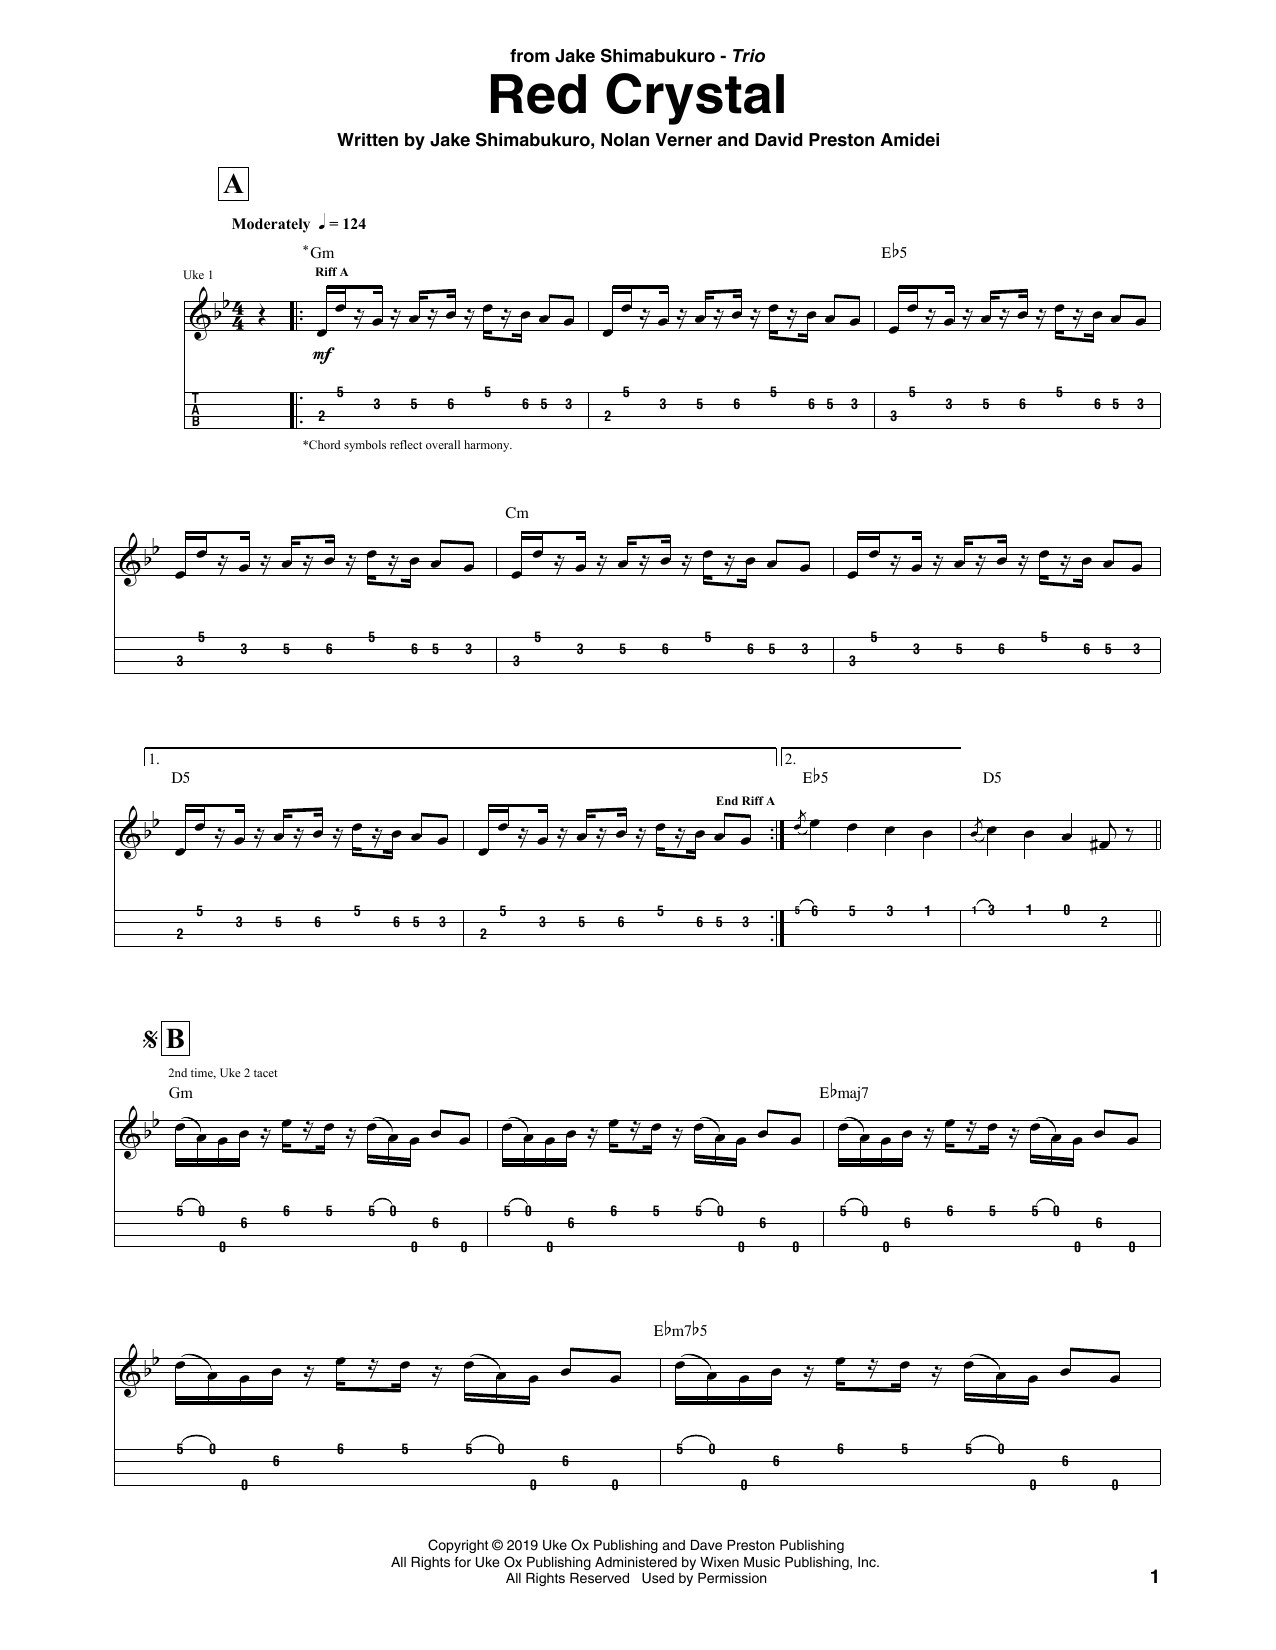 Jake Shimabukuro Trio Red Crystal Sheet Music Notes & Chords for Ukulele Tab - Download or Print PDF